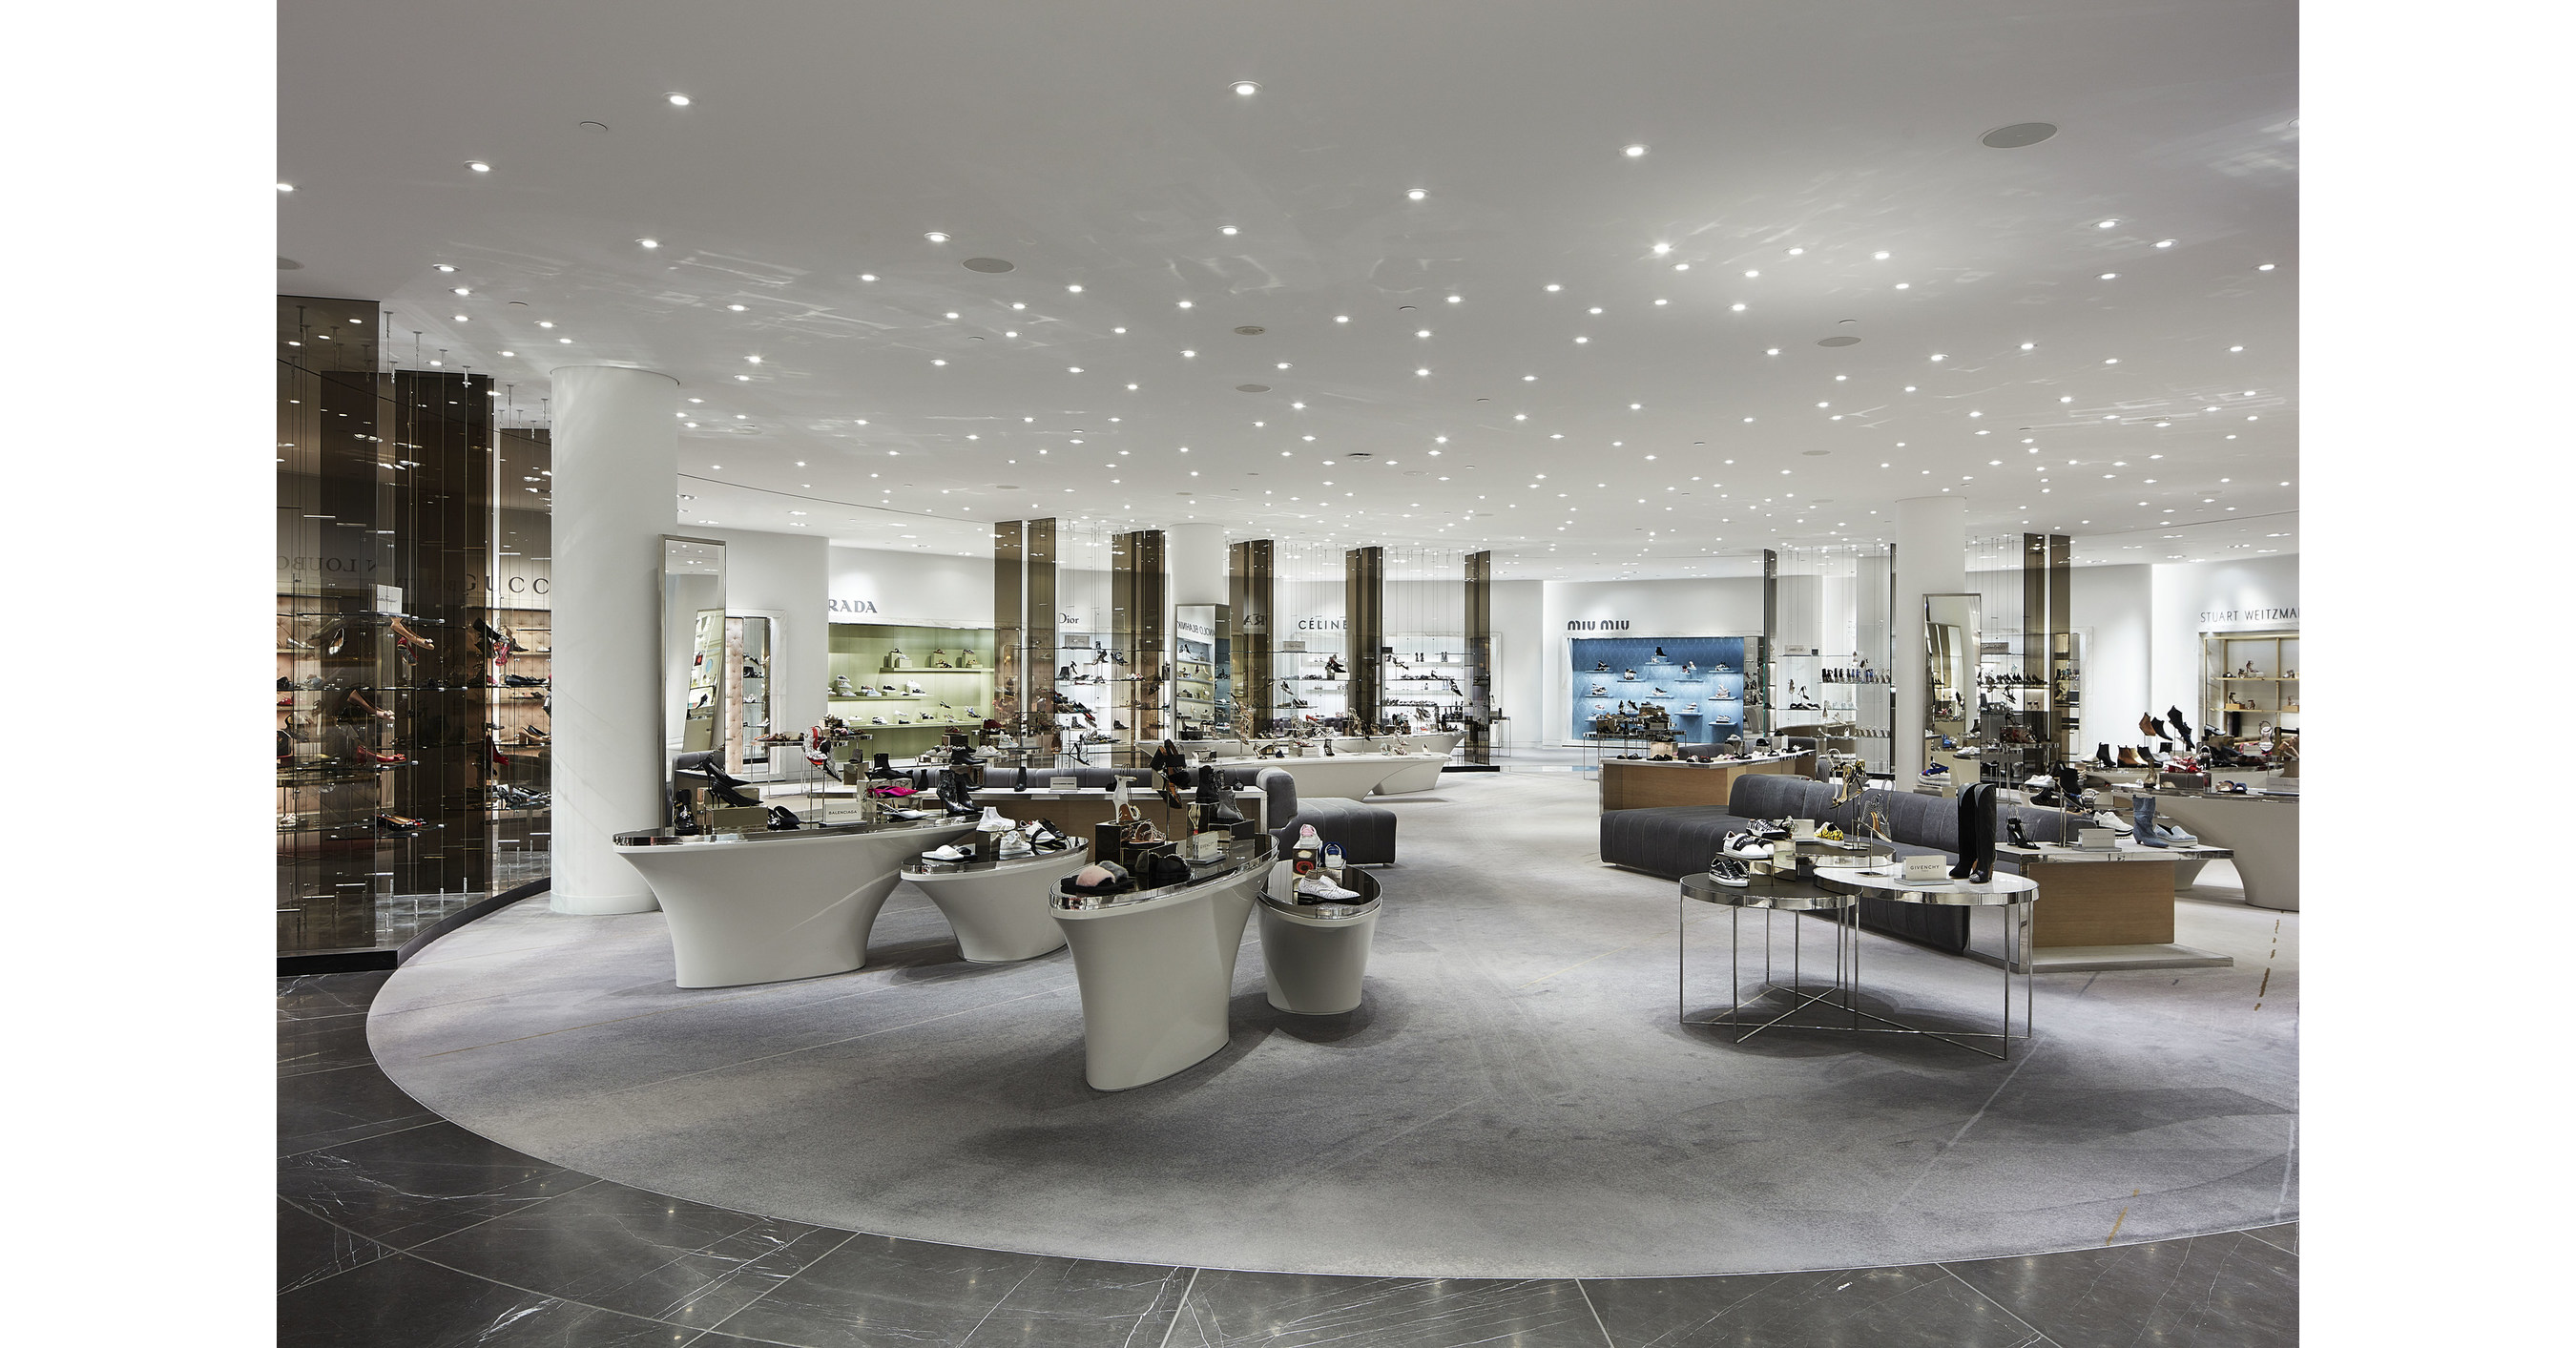 Louis Vuitton Holt Renfrew Vancouver